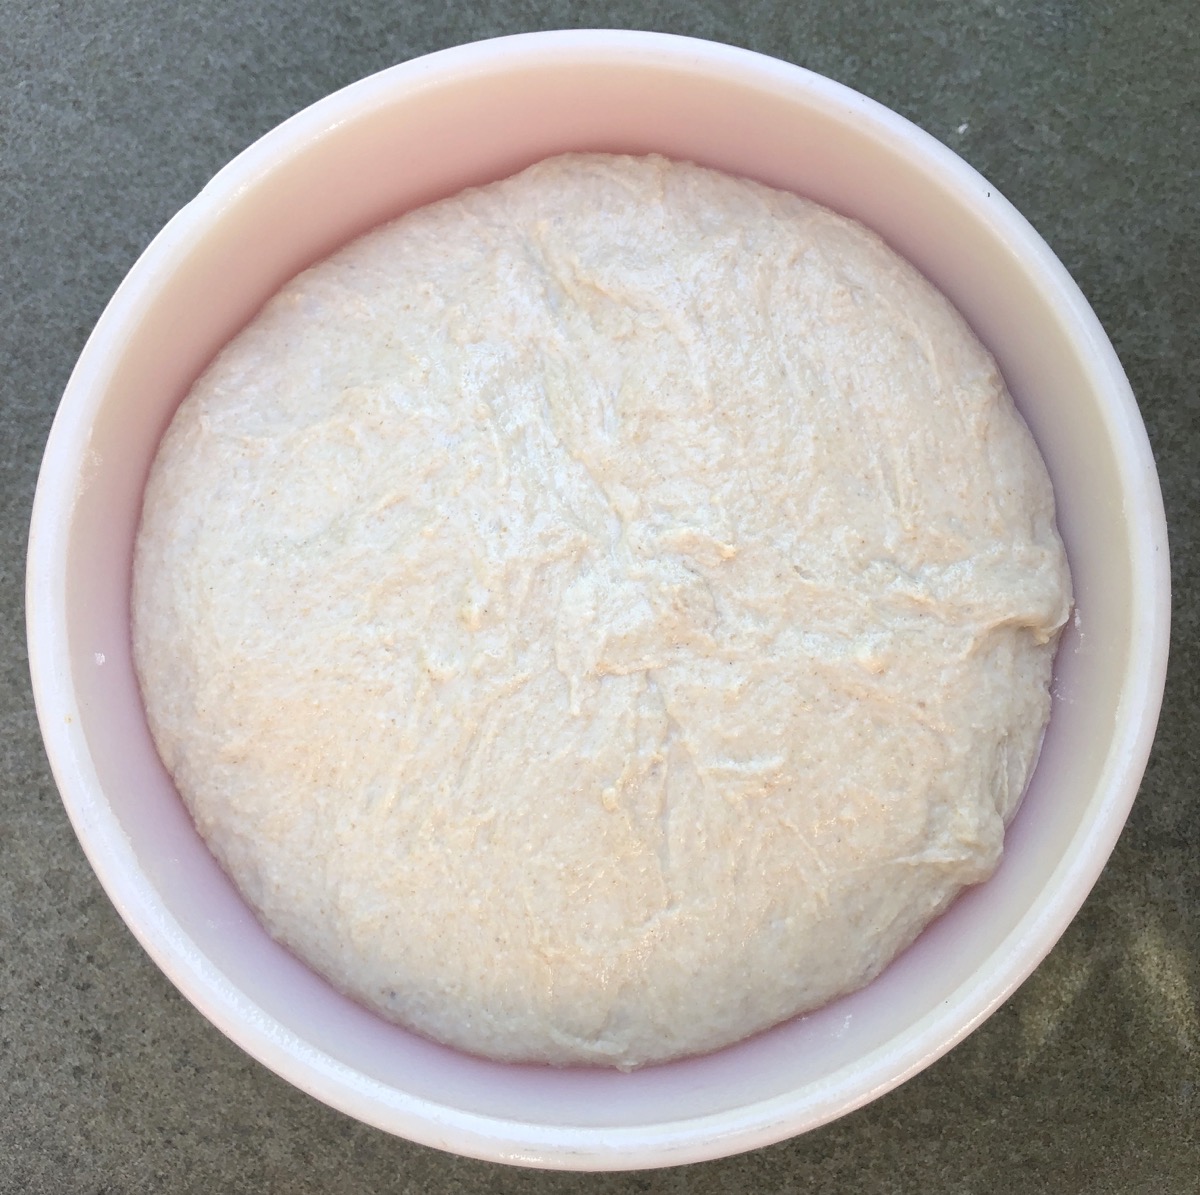 Risen dough in a Pyrex bowl.